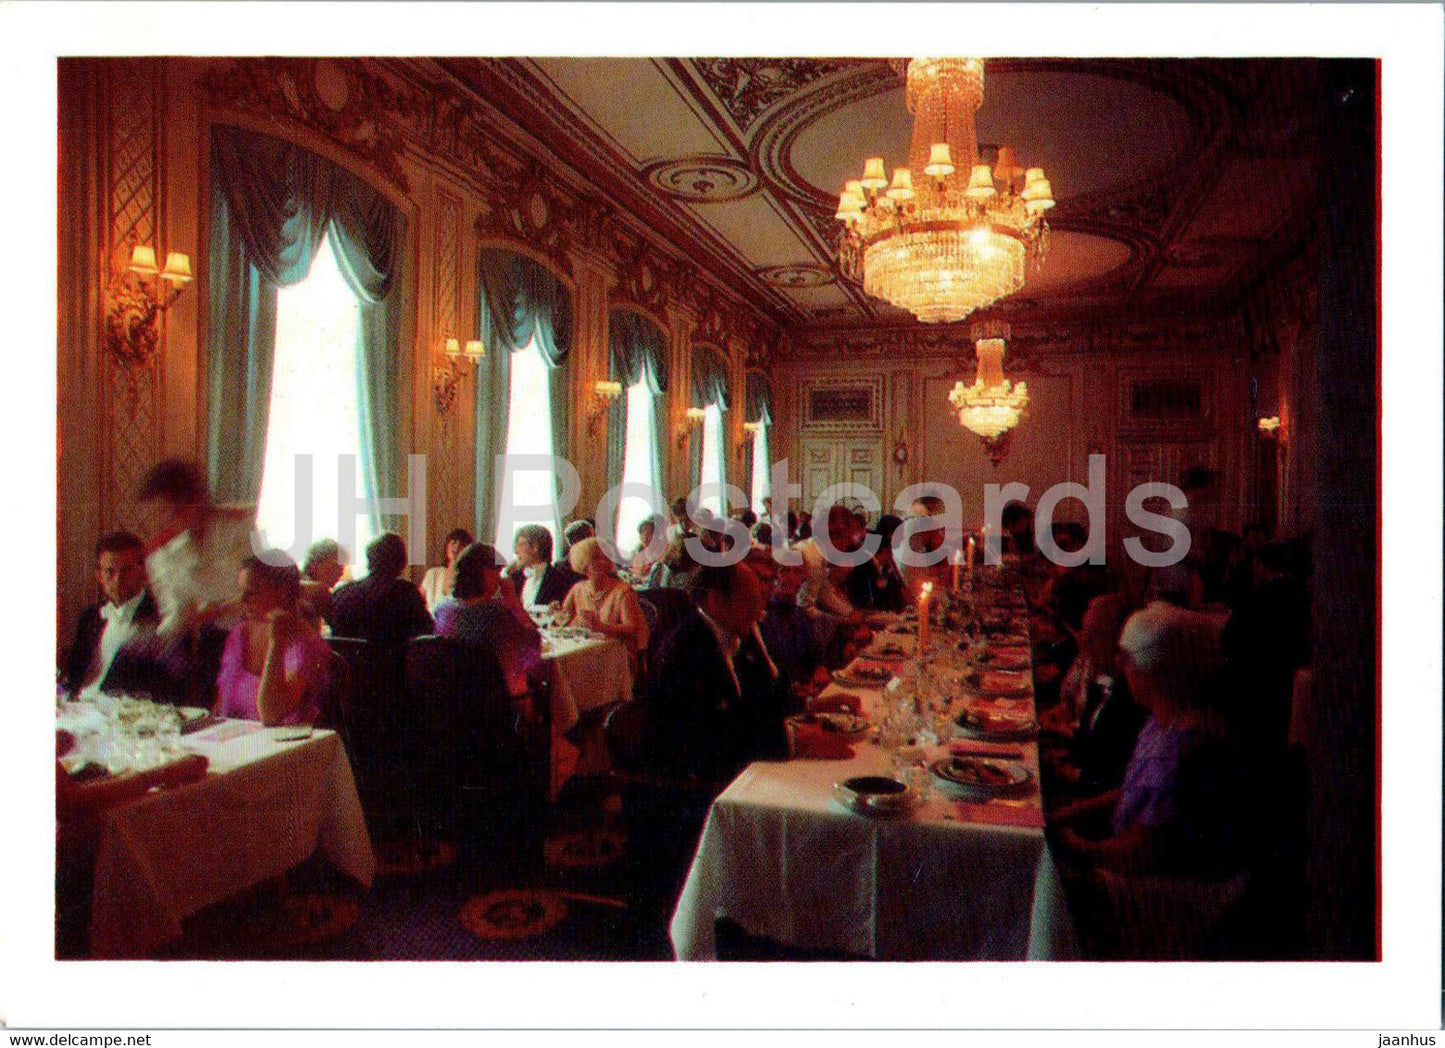 franska matsalen - dining room - Grand Hotel Saltsjobaden - Sweden - unused - JH Postcards